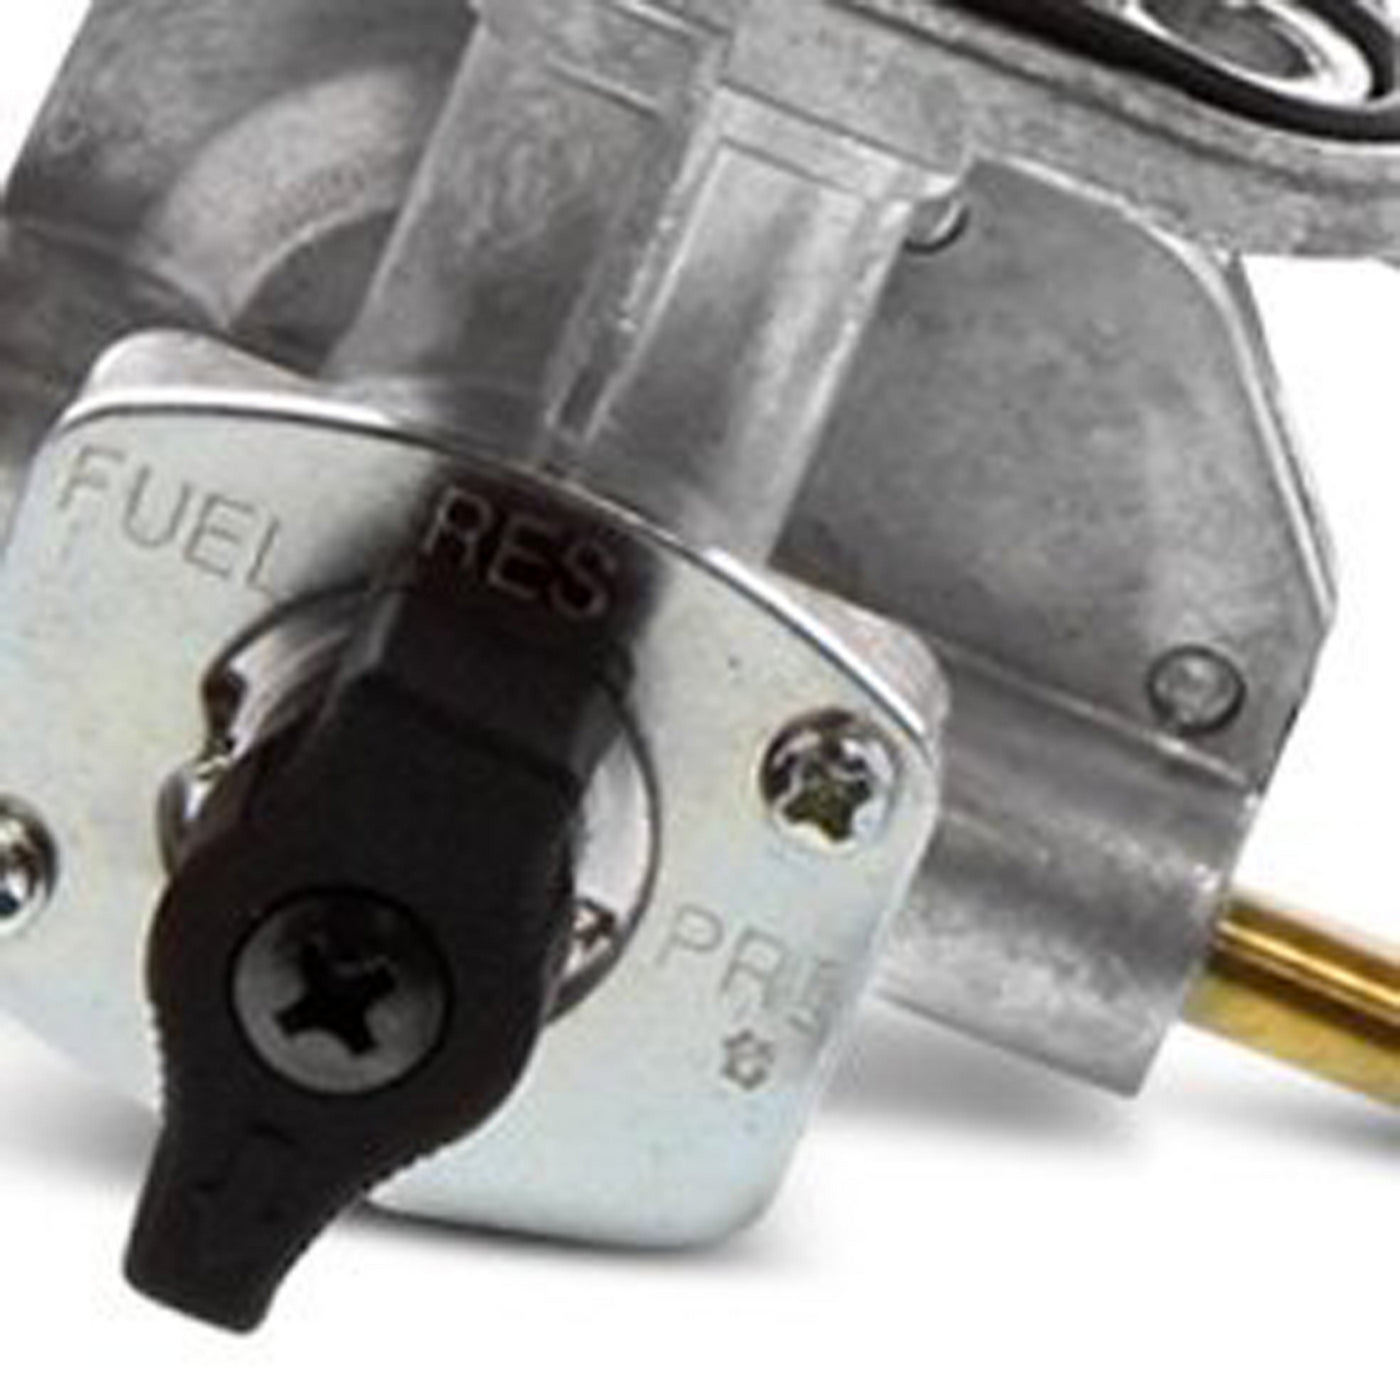 Fuel Star FS101-0114 Fuel Valve Kit #FS101-0114